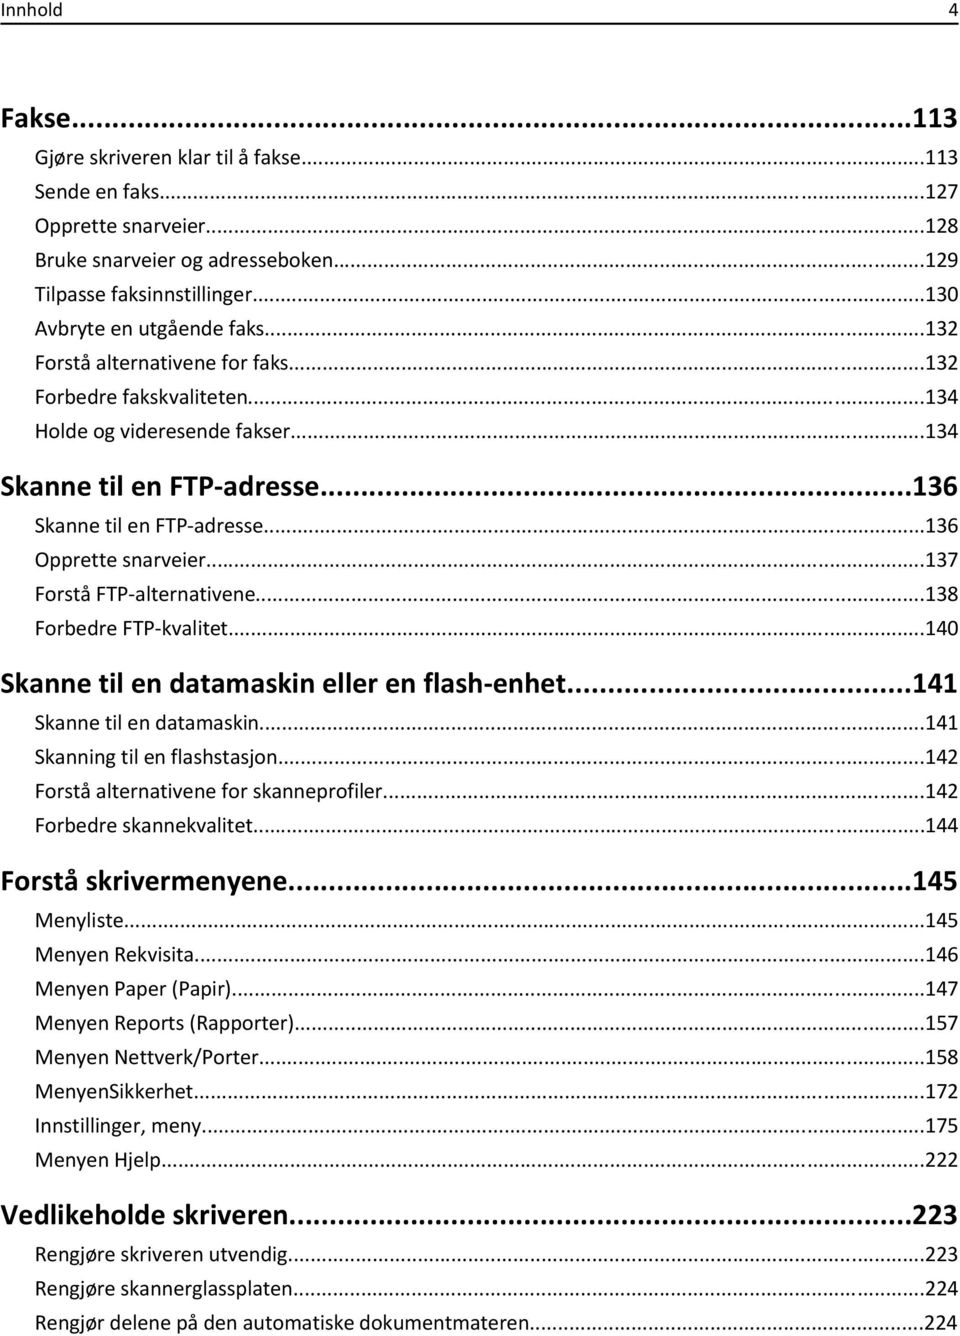 ..137 Forstå FTP-alternativene...138 Forbedre FTP-kvalitet...140 Skanne til en datamaskin eller en flash-enhet...141 Skanne til en datamaskin...141 Skanning til en flashstasjon.